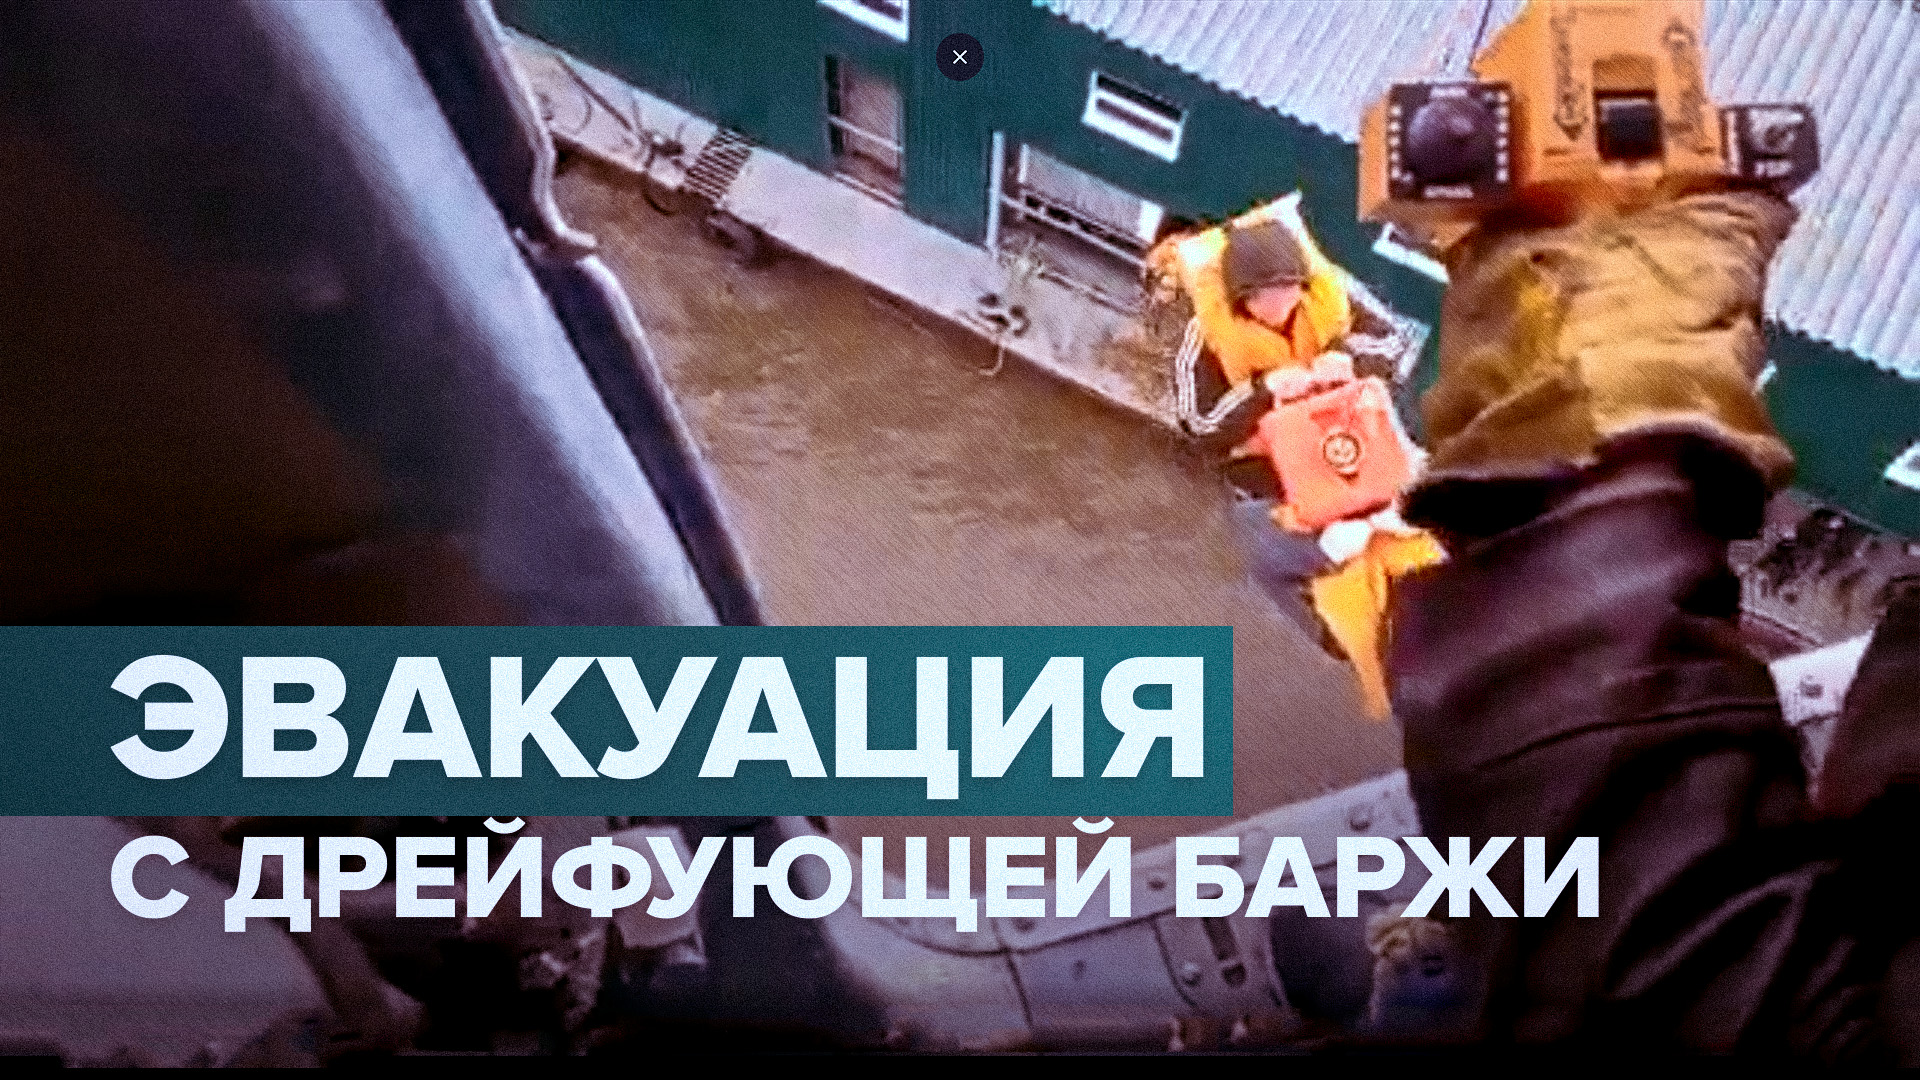 В Хабаровском крае сотрудники МЧС спасли с дрейфующей баржи 16 человек